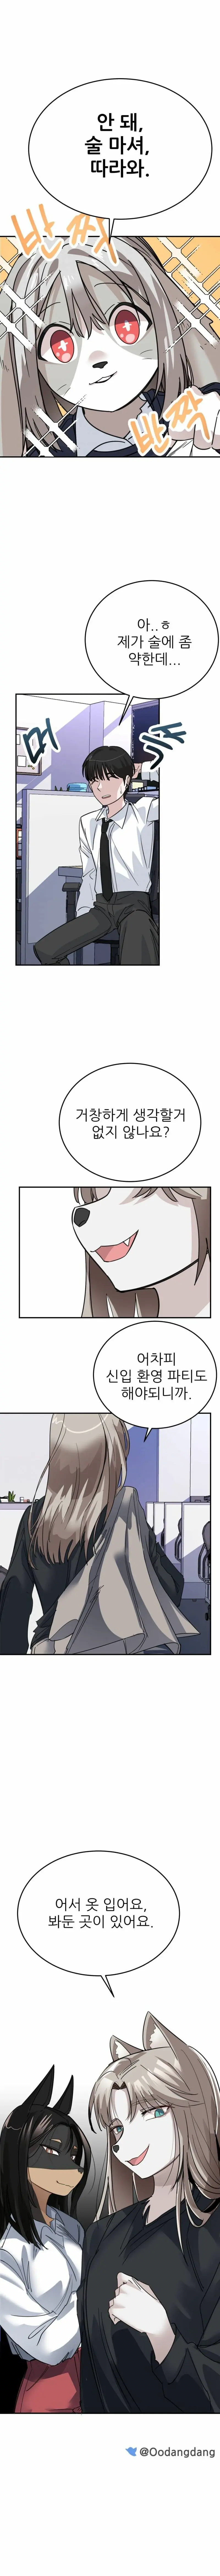 여초회사에 들어온 신입사원 만화 | mbong.kr 엠봉